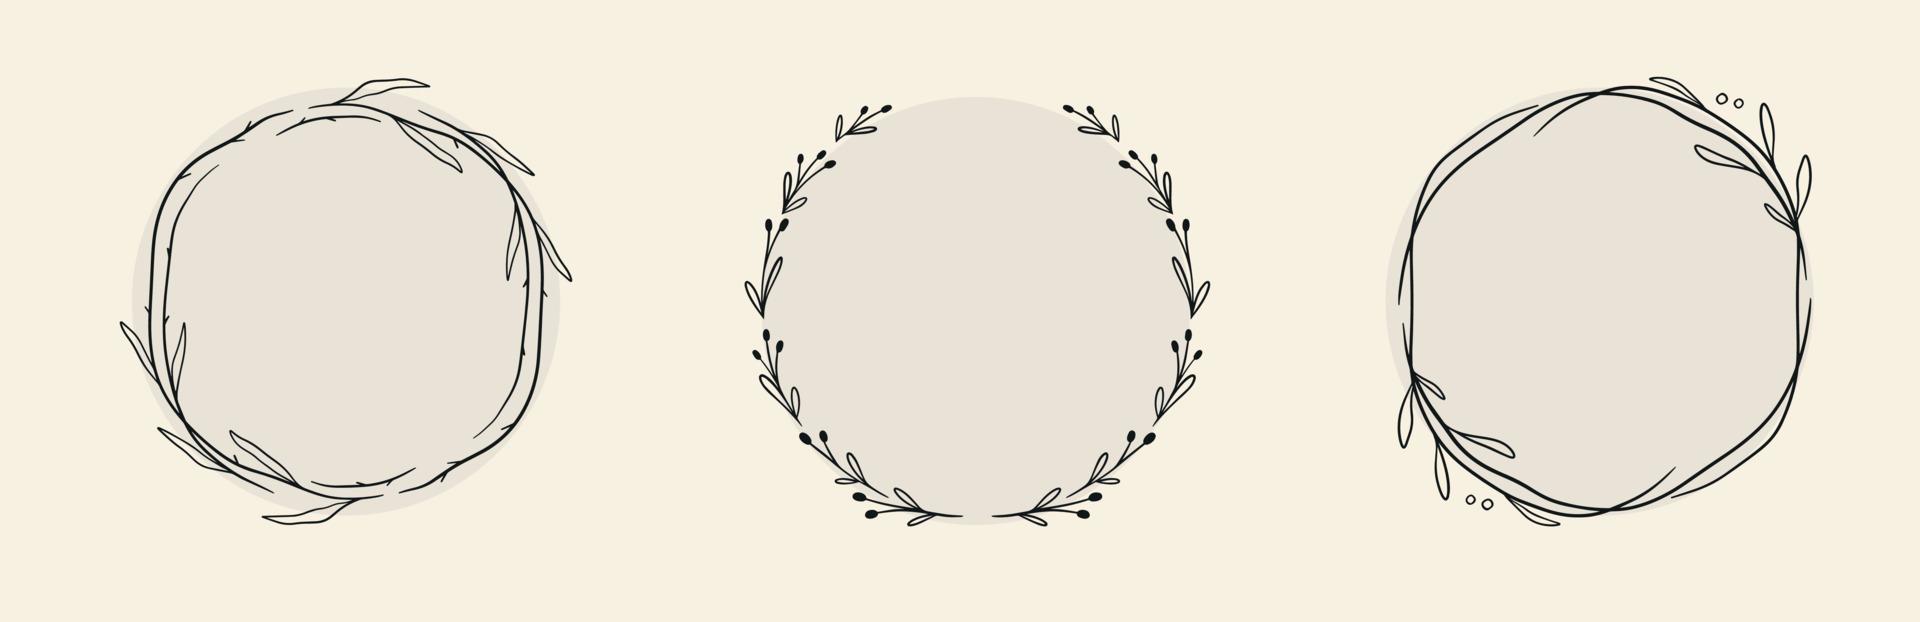 ensemble de cadre floral de cercle décoratif dessiné à la main de doodle noir. couronne de vecteur avec des branches, des herbes, des plantes, des feuilles. illustration isolée sur fond blanc